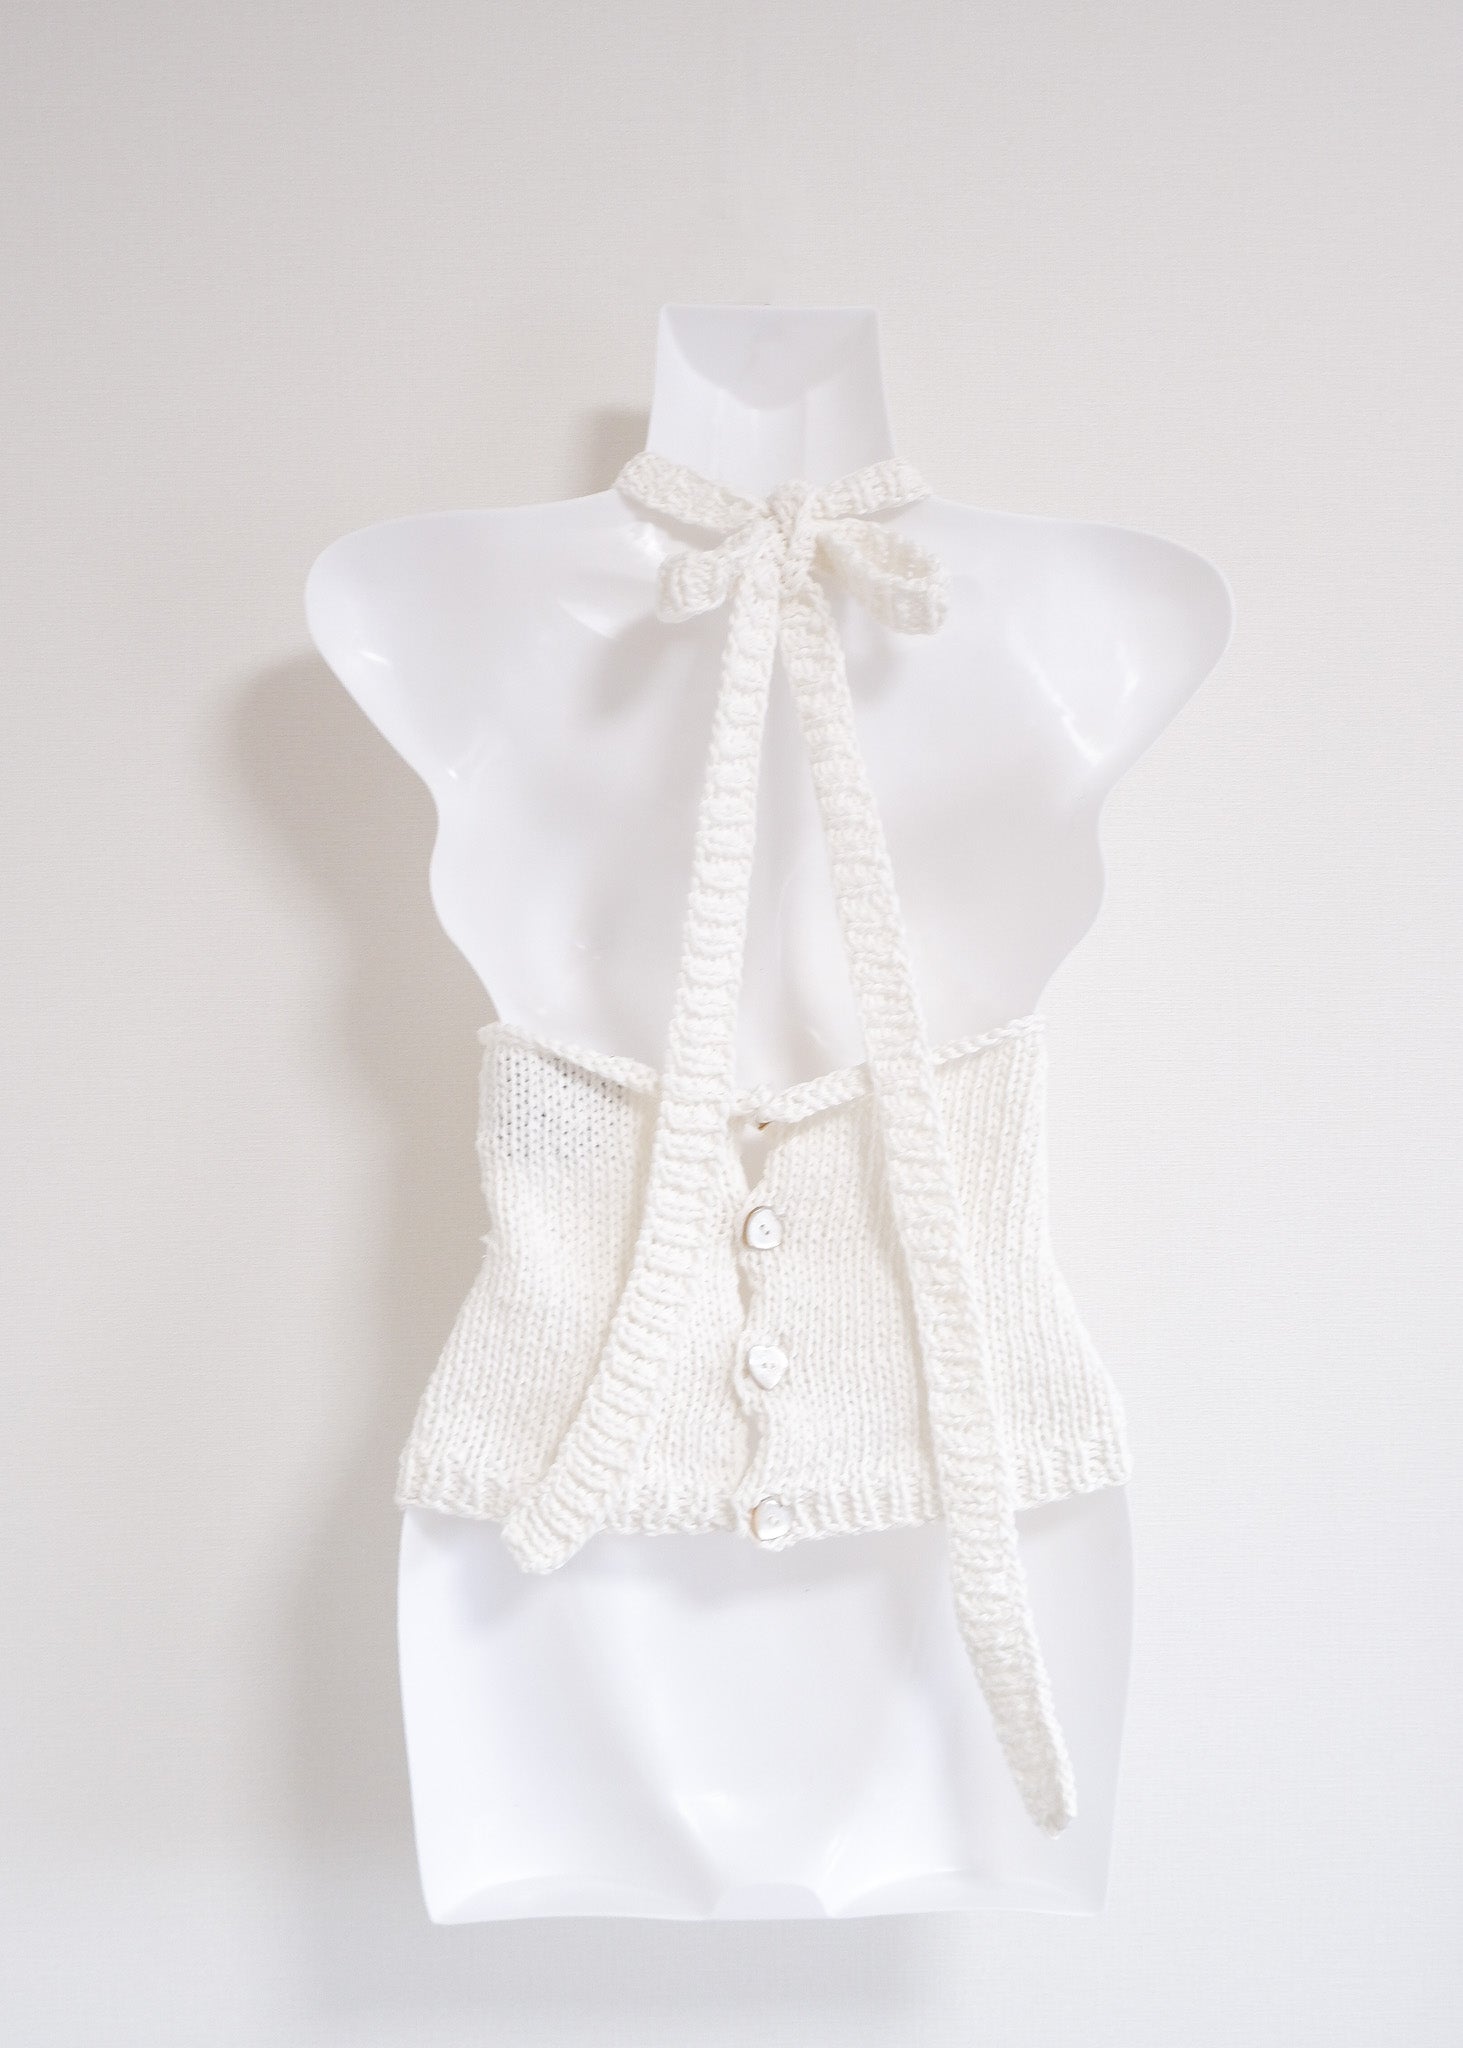 Halter neck/  Summer knit tops